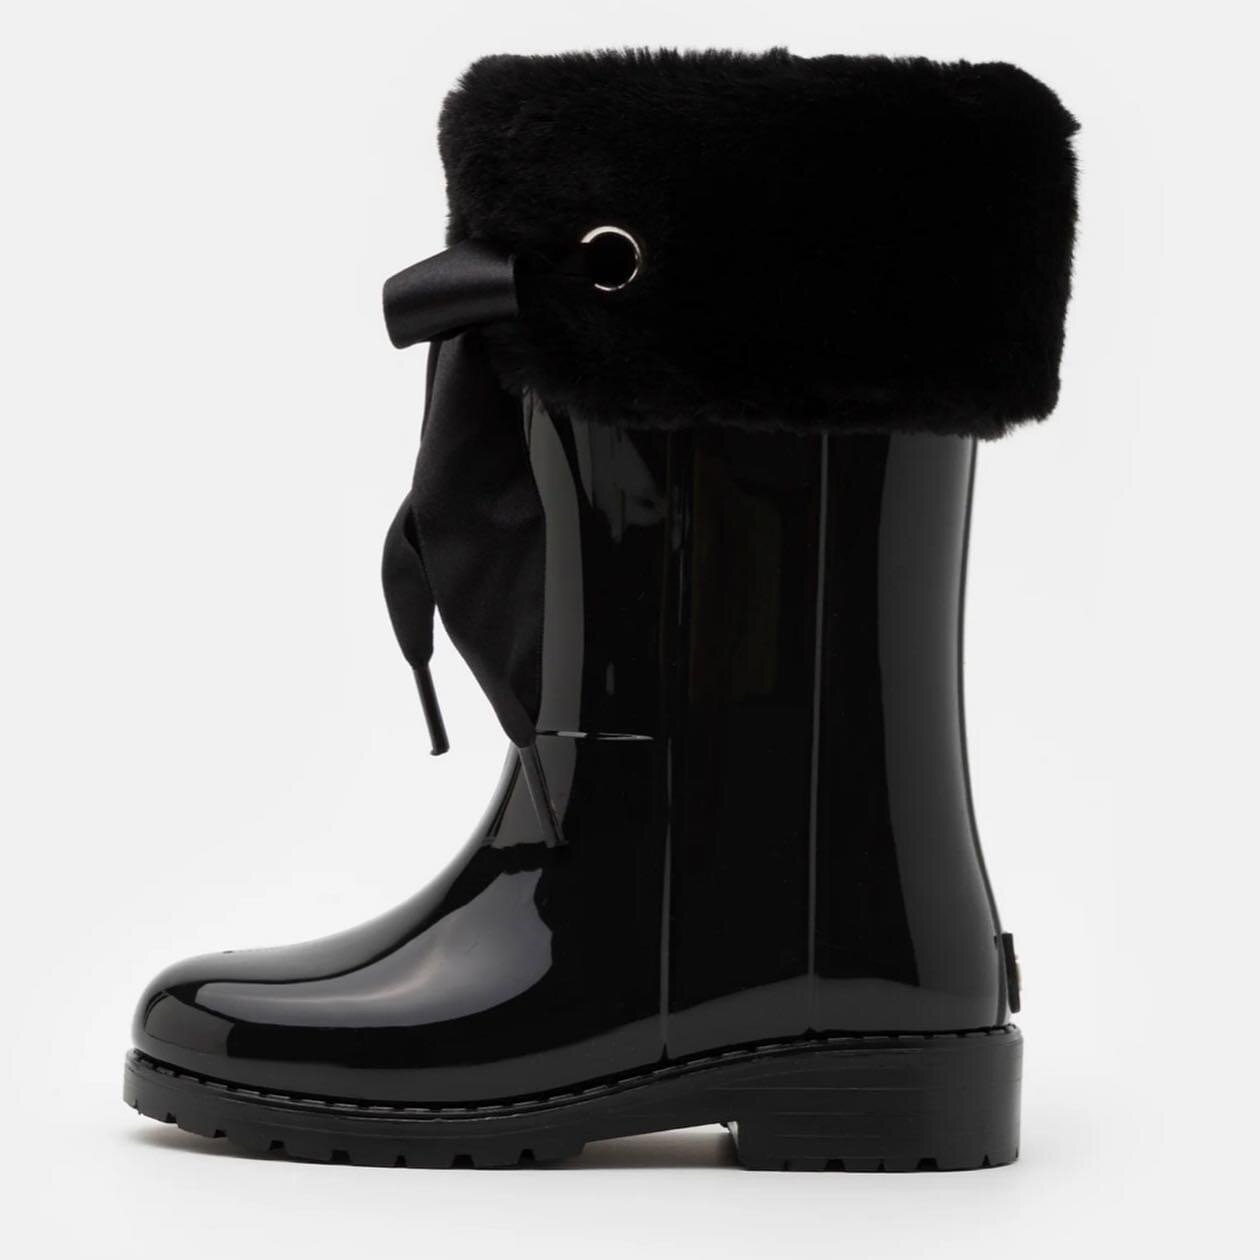 Igor Fur Rain Boots in Cream or Gray – Layla's Boutique